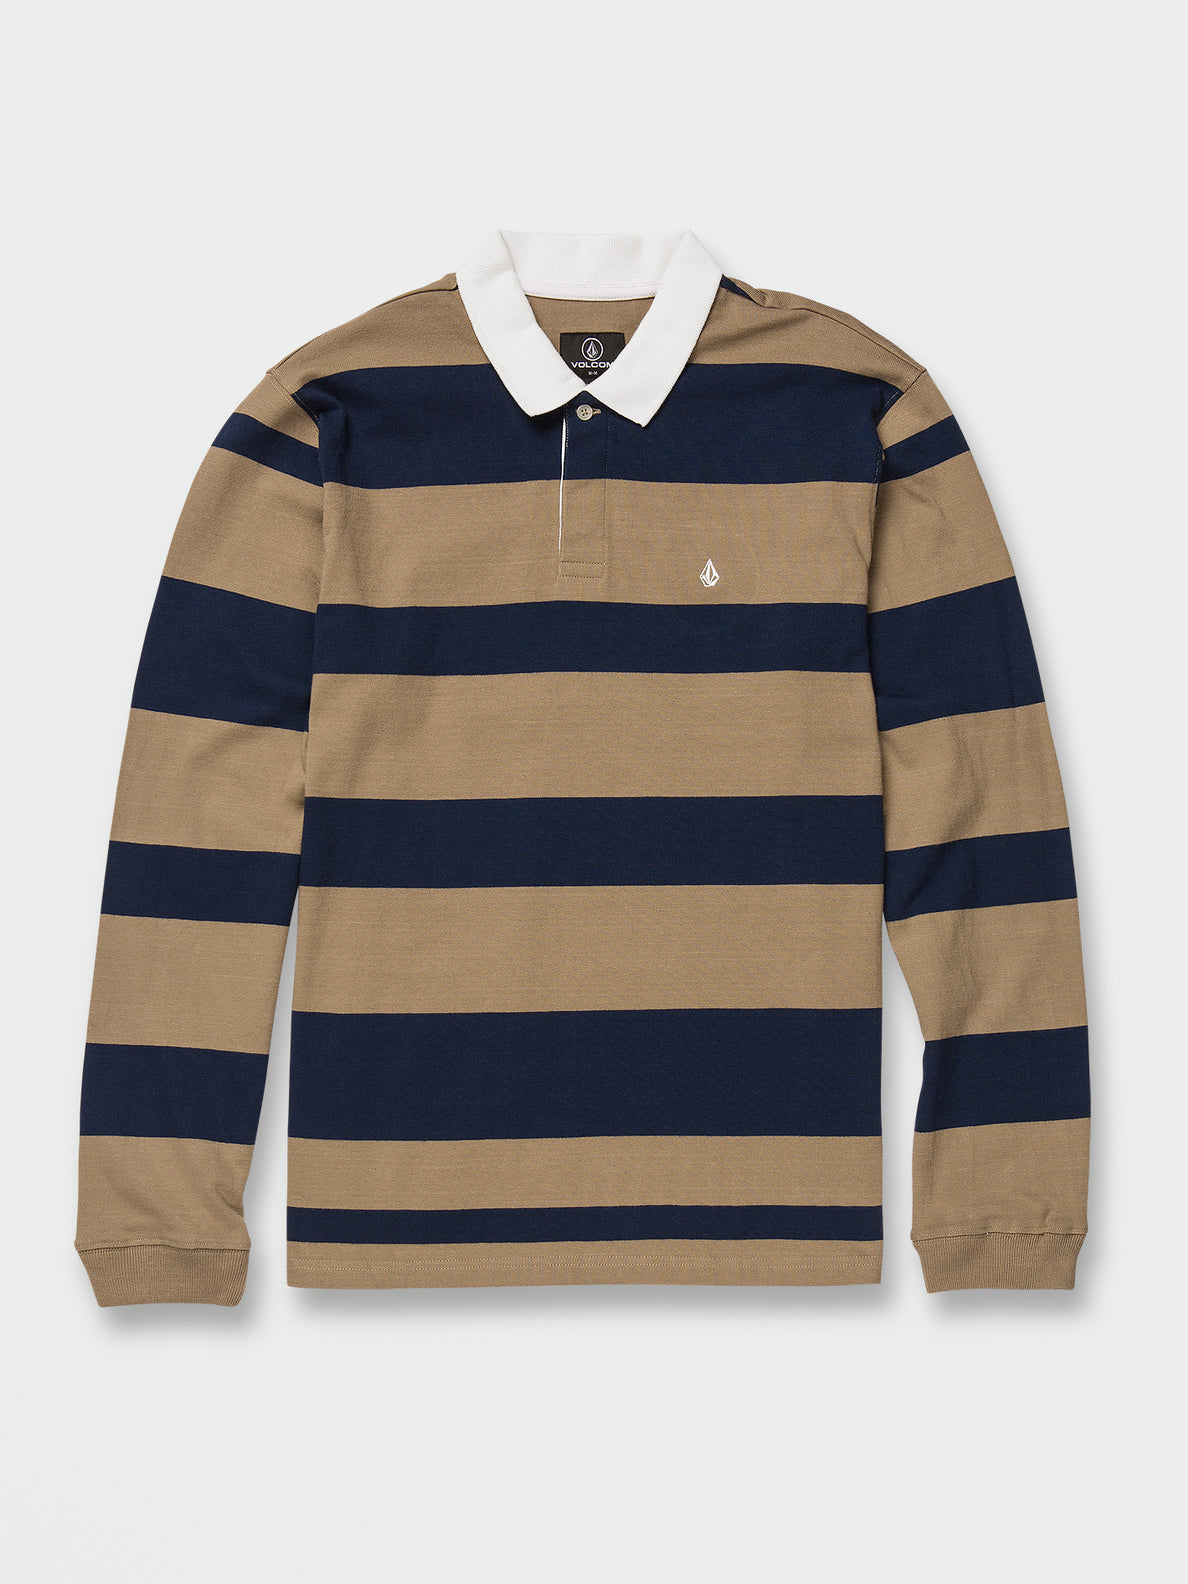 Sumpter Polo Long Sleeve Shirt - Khaki (A0332200_KHA) [B]